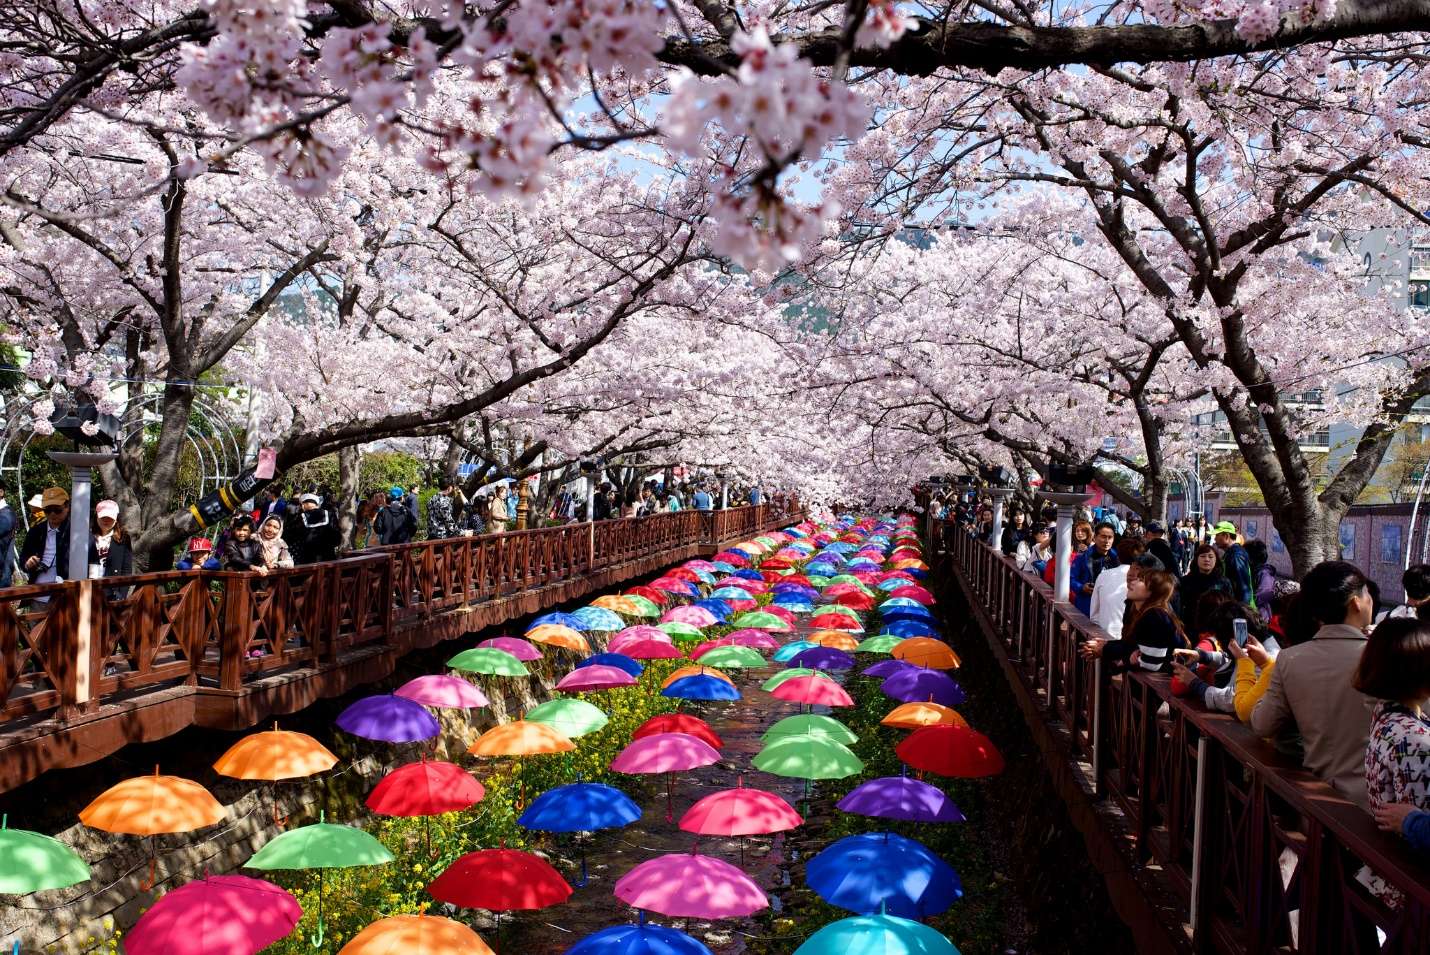 Lễ hội hoa anh đào ở Jinhae, tỉnh Gyeongnam thu hút khách du lịch